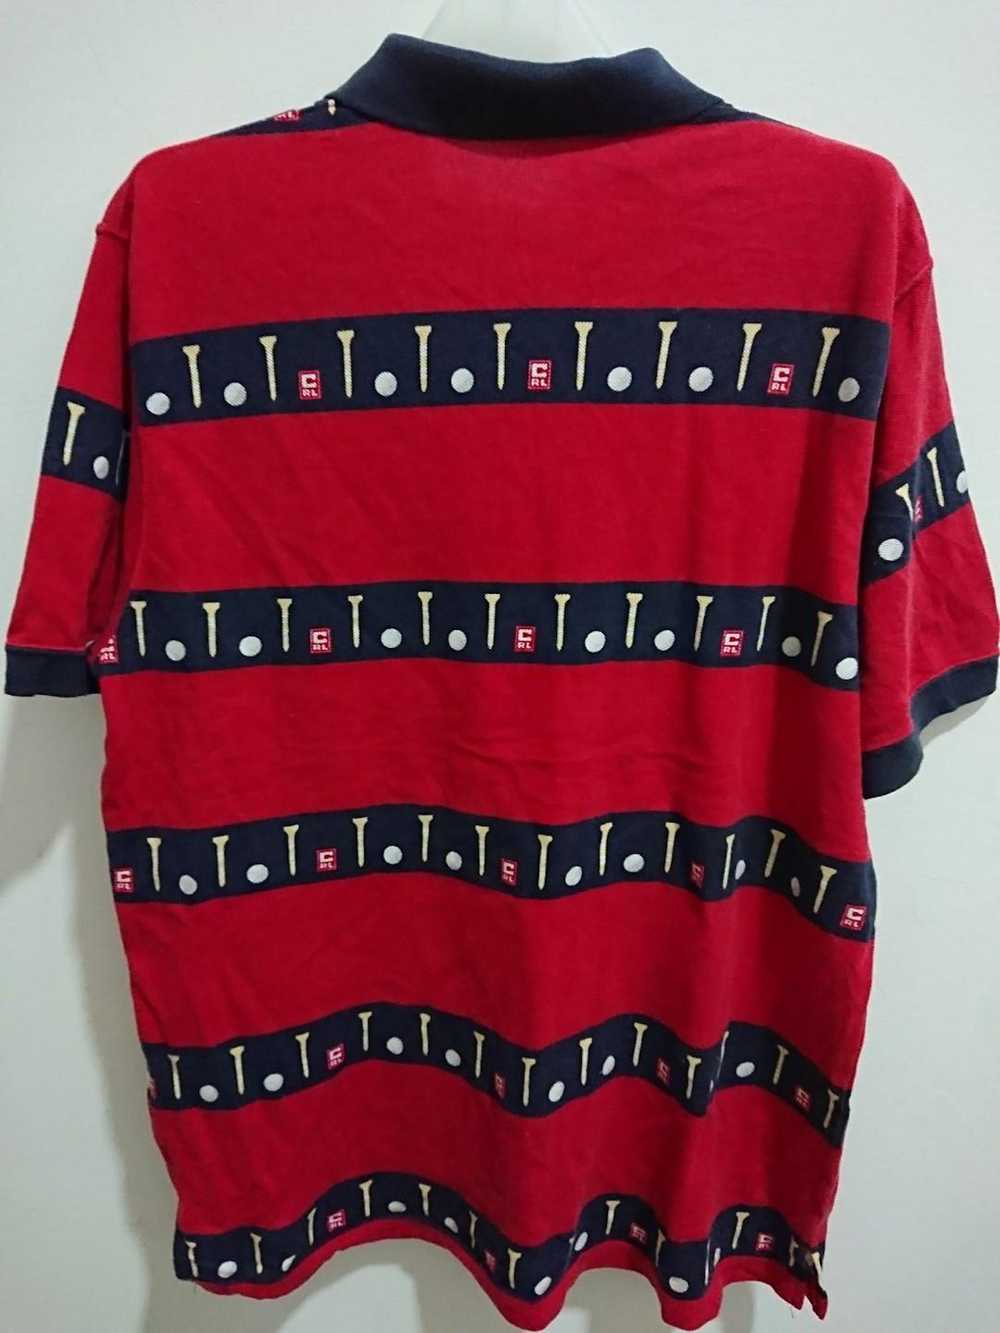 Chaps Ralph Lauren Chaps polo shirt size 2L - image 2